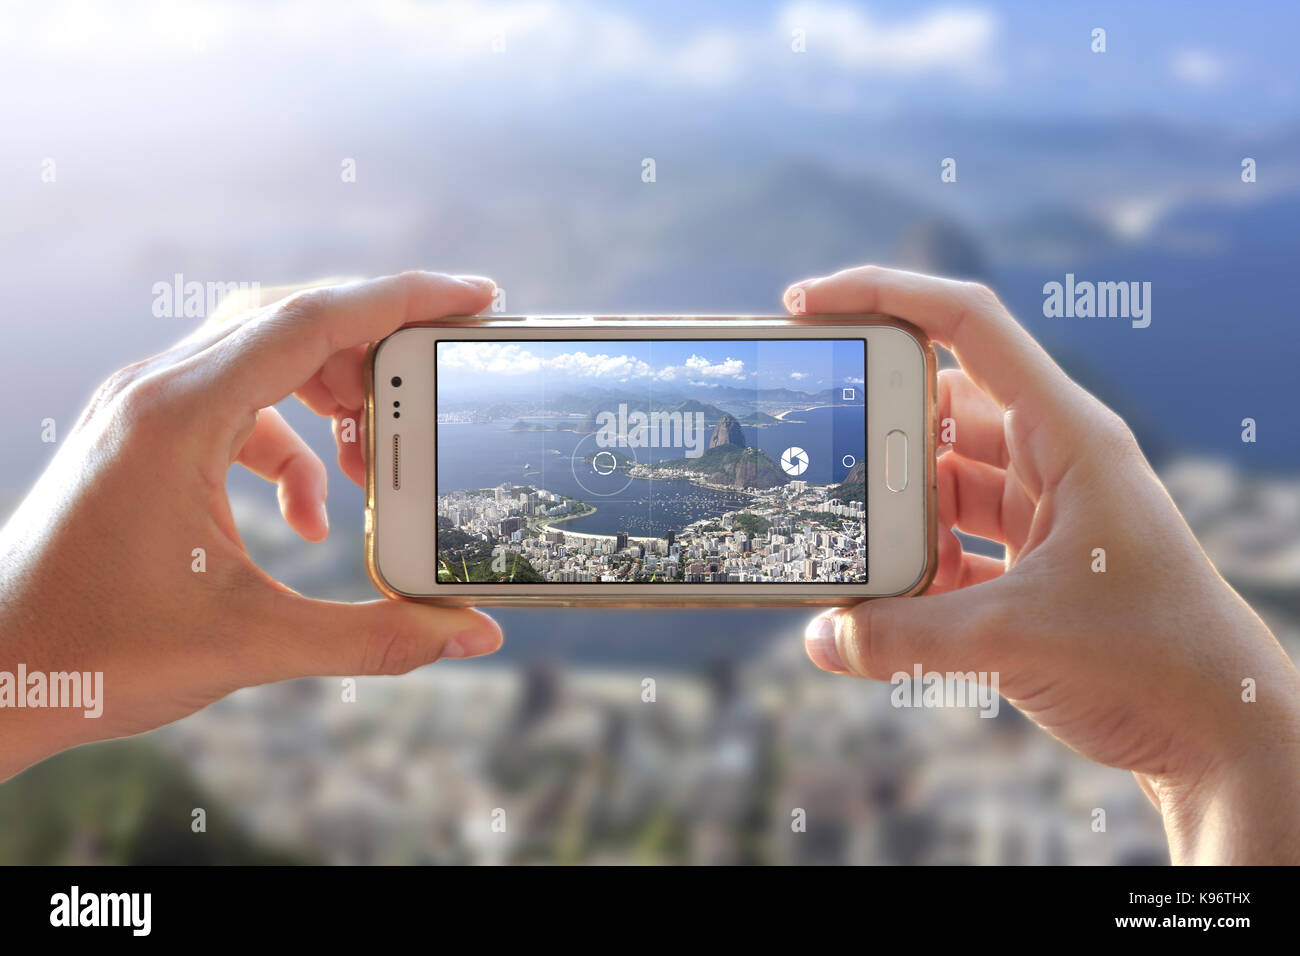 Frau, die ein Foto von Rio gemacht hat. Fotokamera eines Smartphones. Betrachten Sie den Moment durch den Bildschirm, in dem eine junge Frau das Bild macht. Stadt Rio de Janeiro. Stockfoto